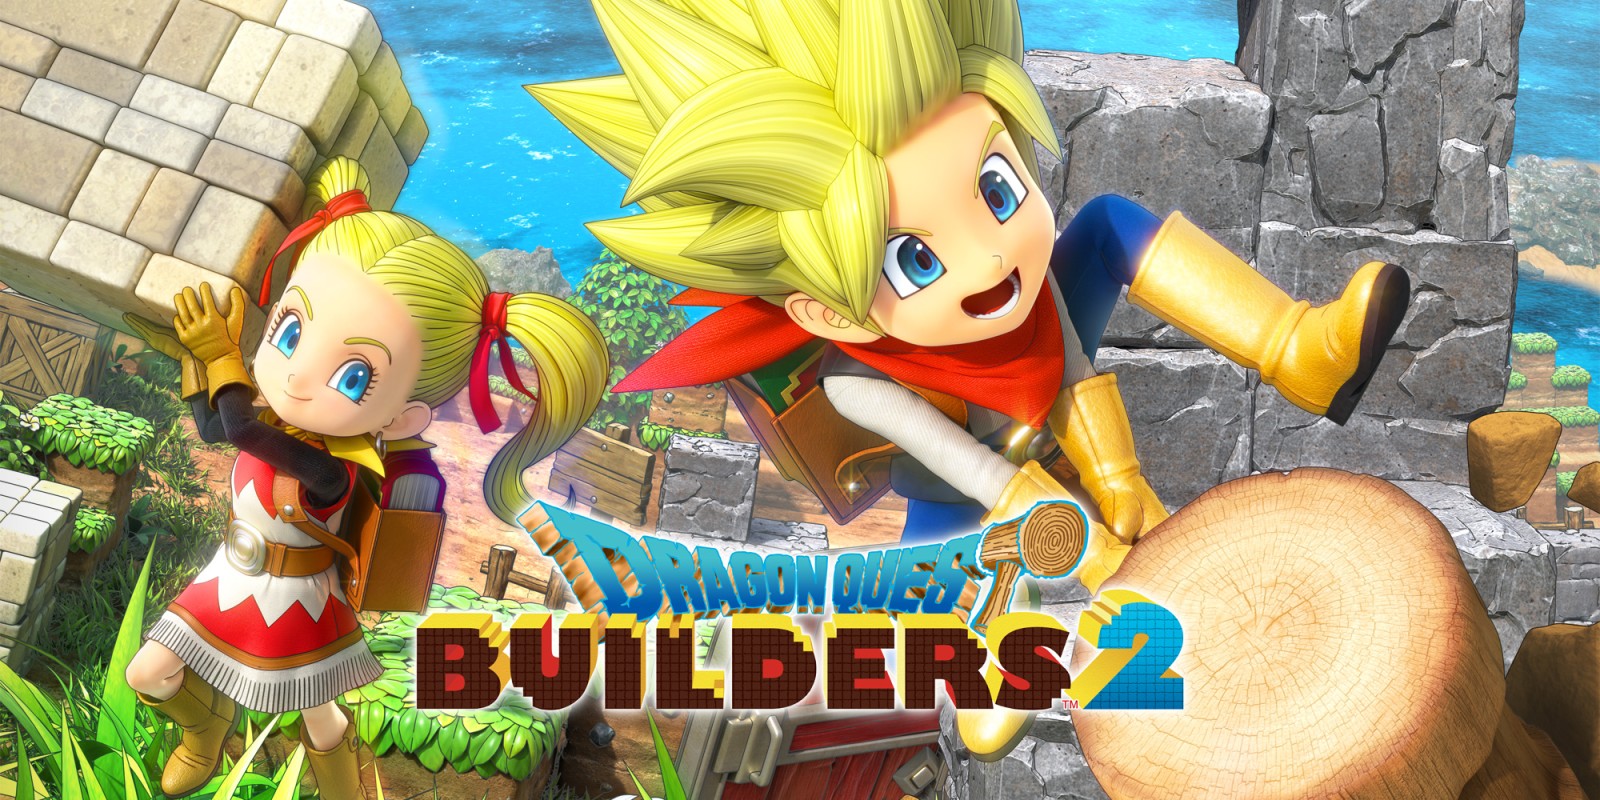 Novo vídeo de Dragon Quest Builders 2 mostra multiplayer para até 4 jogadores